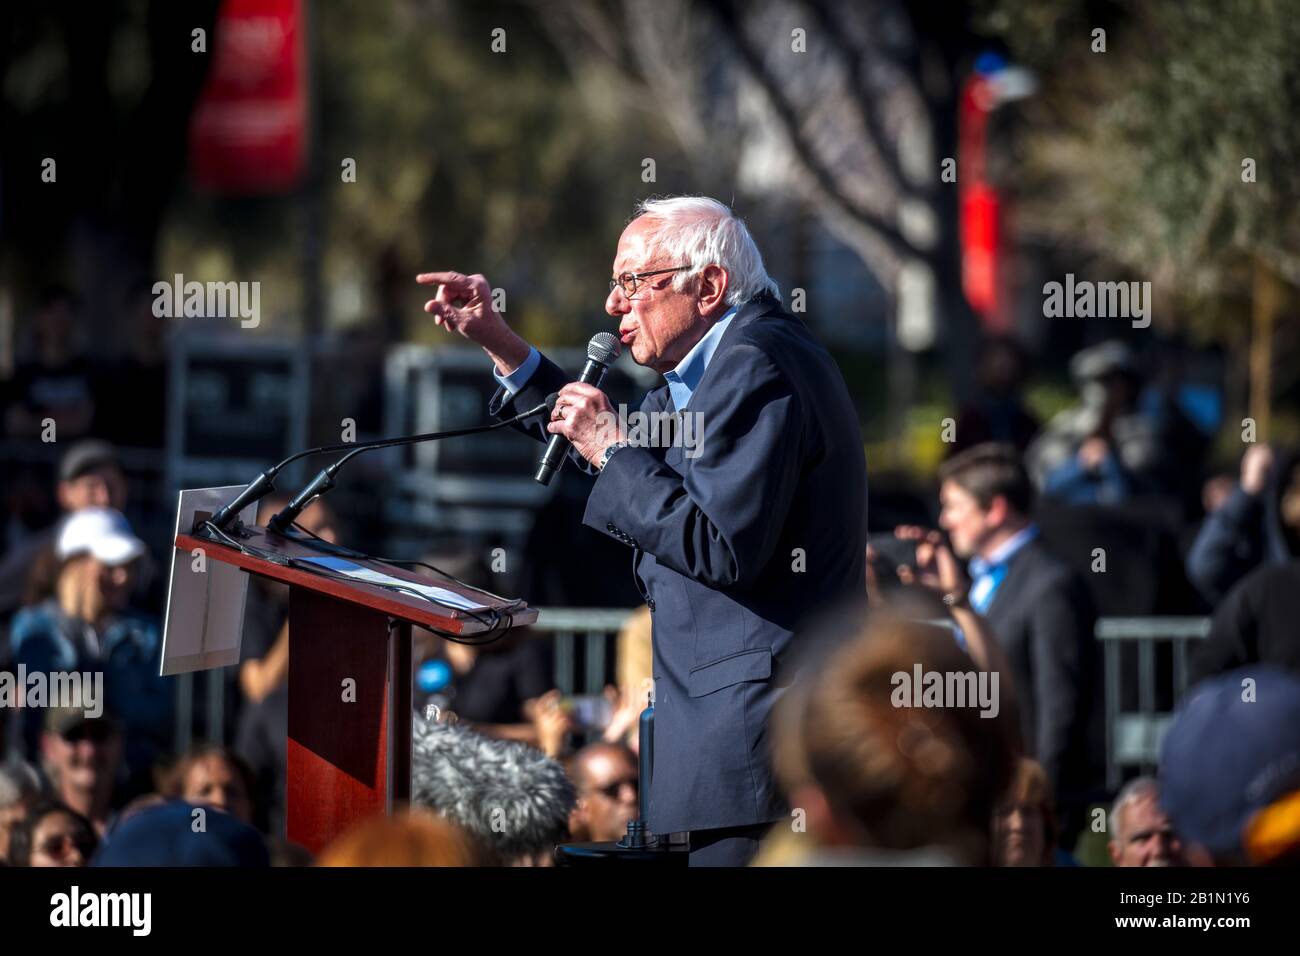 Feb 18, 2020, LAS VEGAS, NEVADA, EE.UU. - el Senador demócrata Bernie Sanders habla en el Rallye Presidencial en la Universidad de las Vegas antes que Nevada Caucus, las Vegas, NV Foto de stock